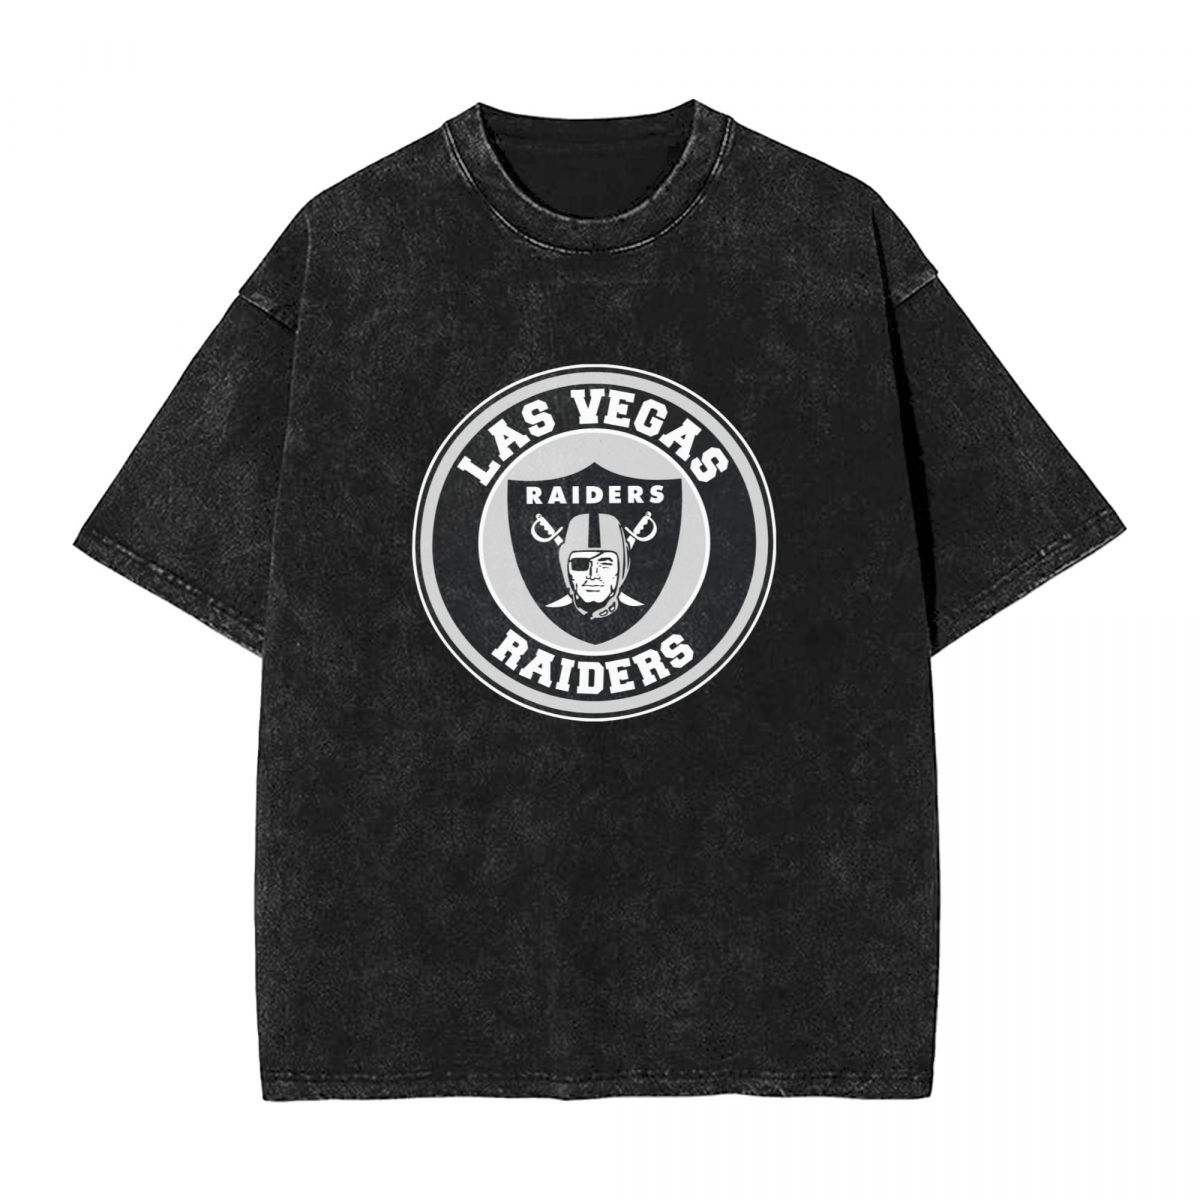 Las Vegas Raiders Circle Logo Printed Vintage Men's Oversized T-Shirt